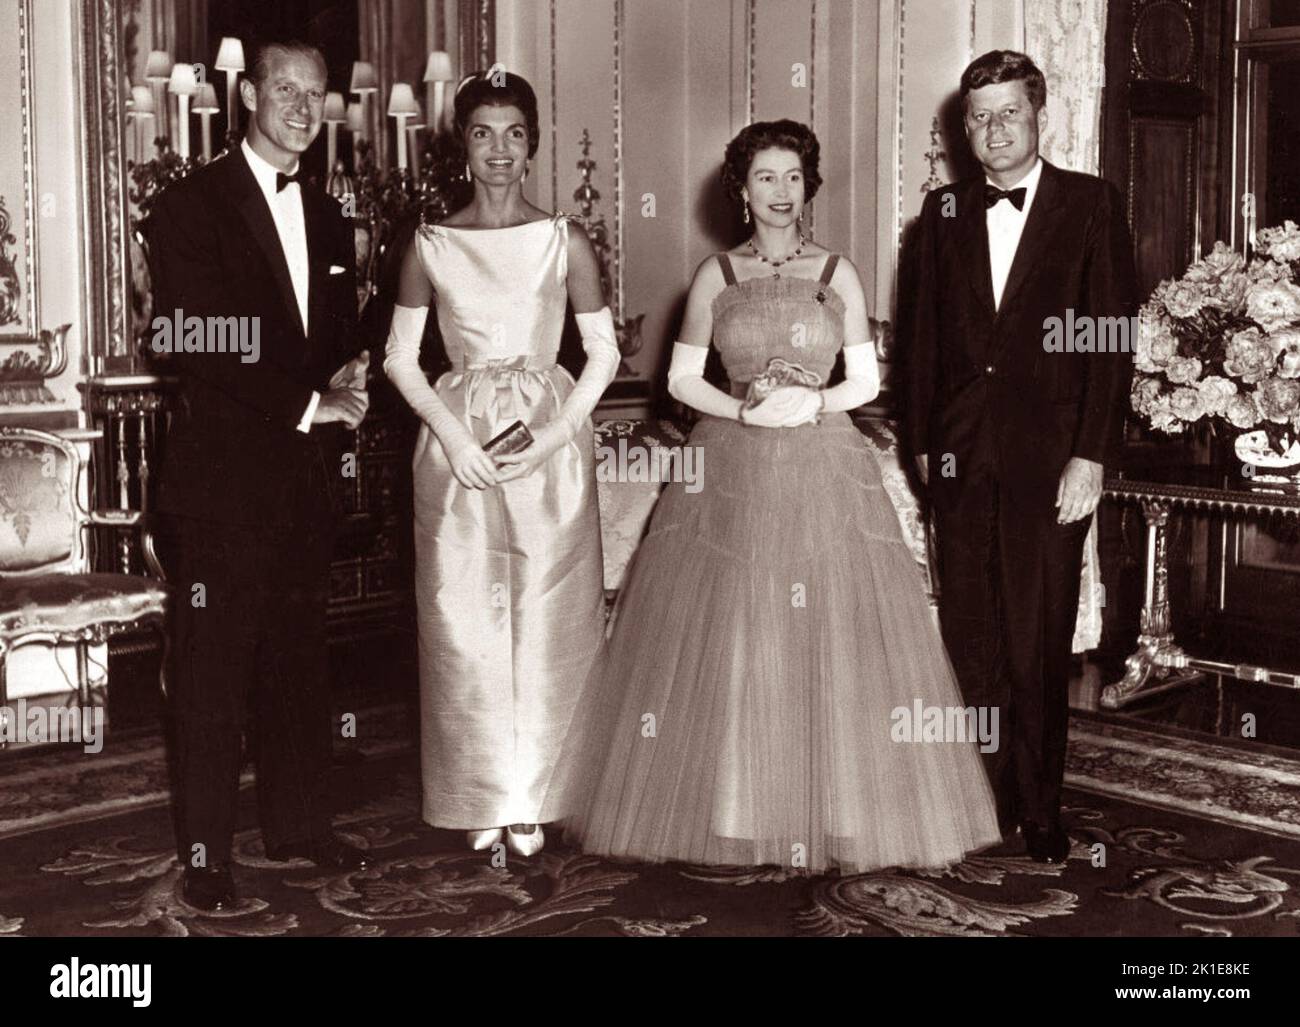 Retrato de grupo con (de izquierda a derecha) el príncipe Felipe, duque de Edimburgo, Jacqueline Kennedy, la reina Isabel II y el presidente estadounidense John F. Kennedy en el Palacio de Buckingham el 5 de junio de 1961. Foto de stock